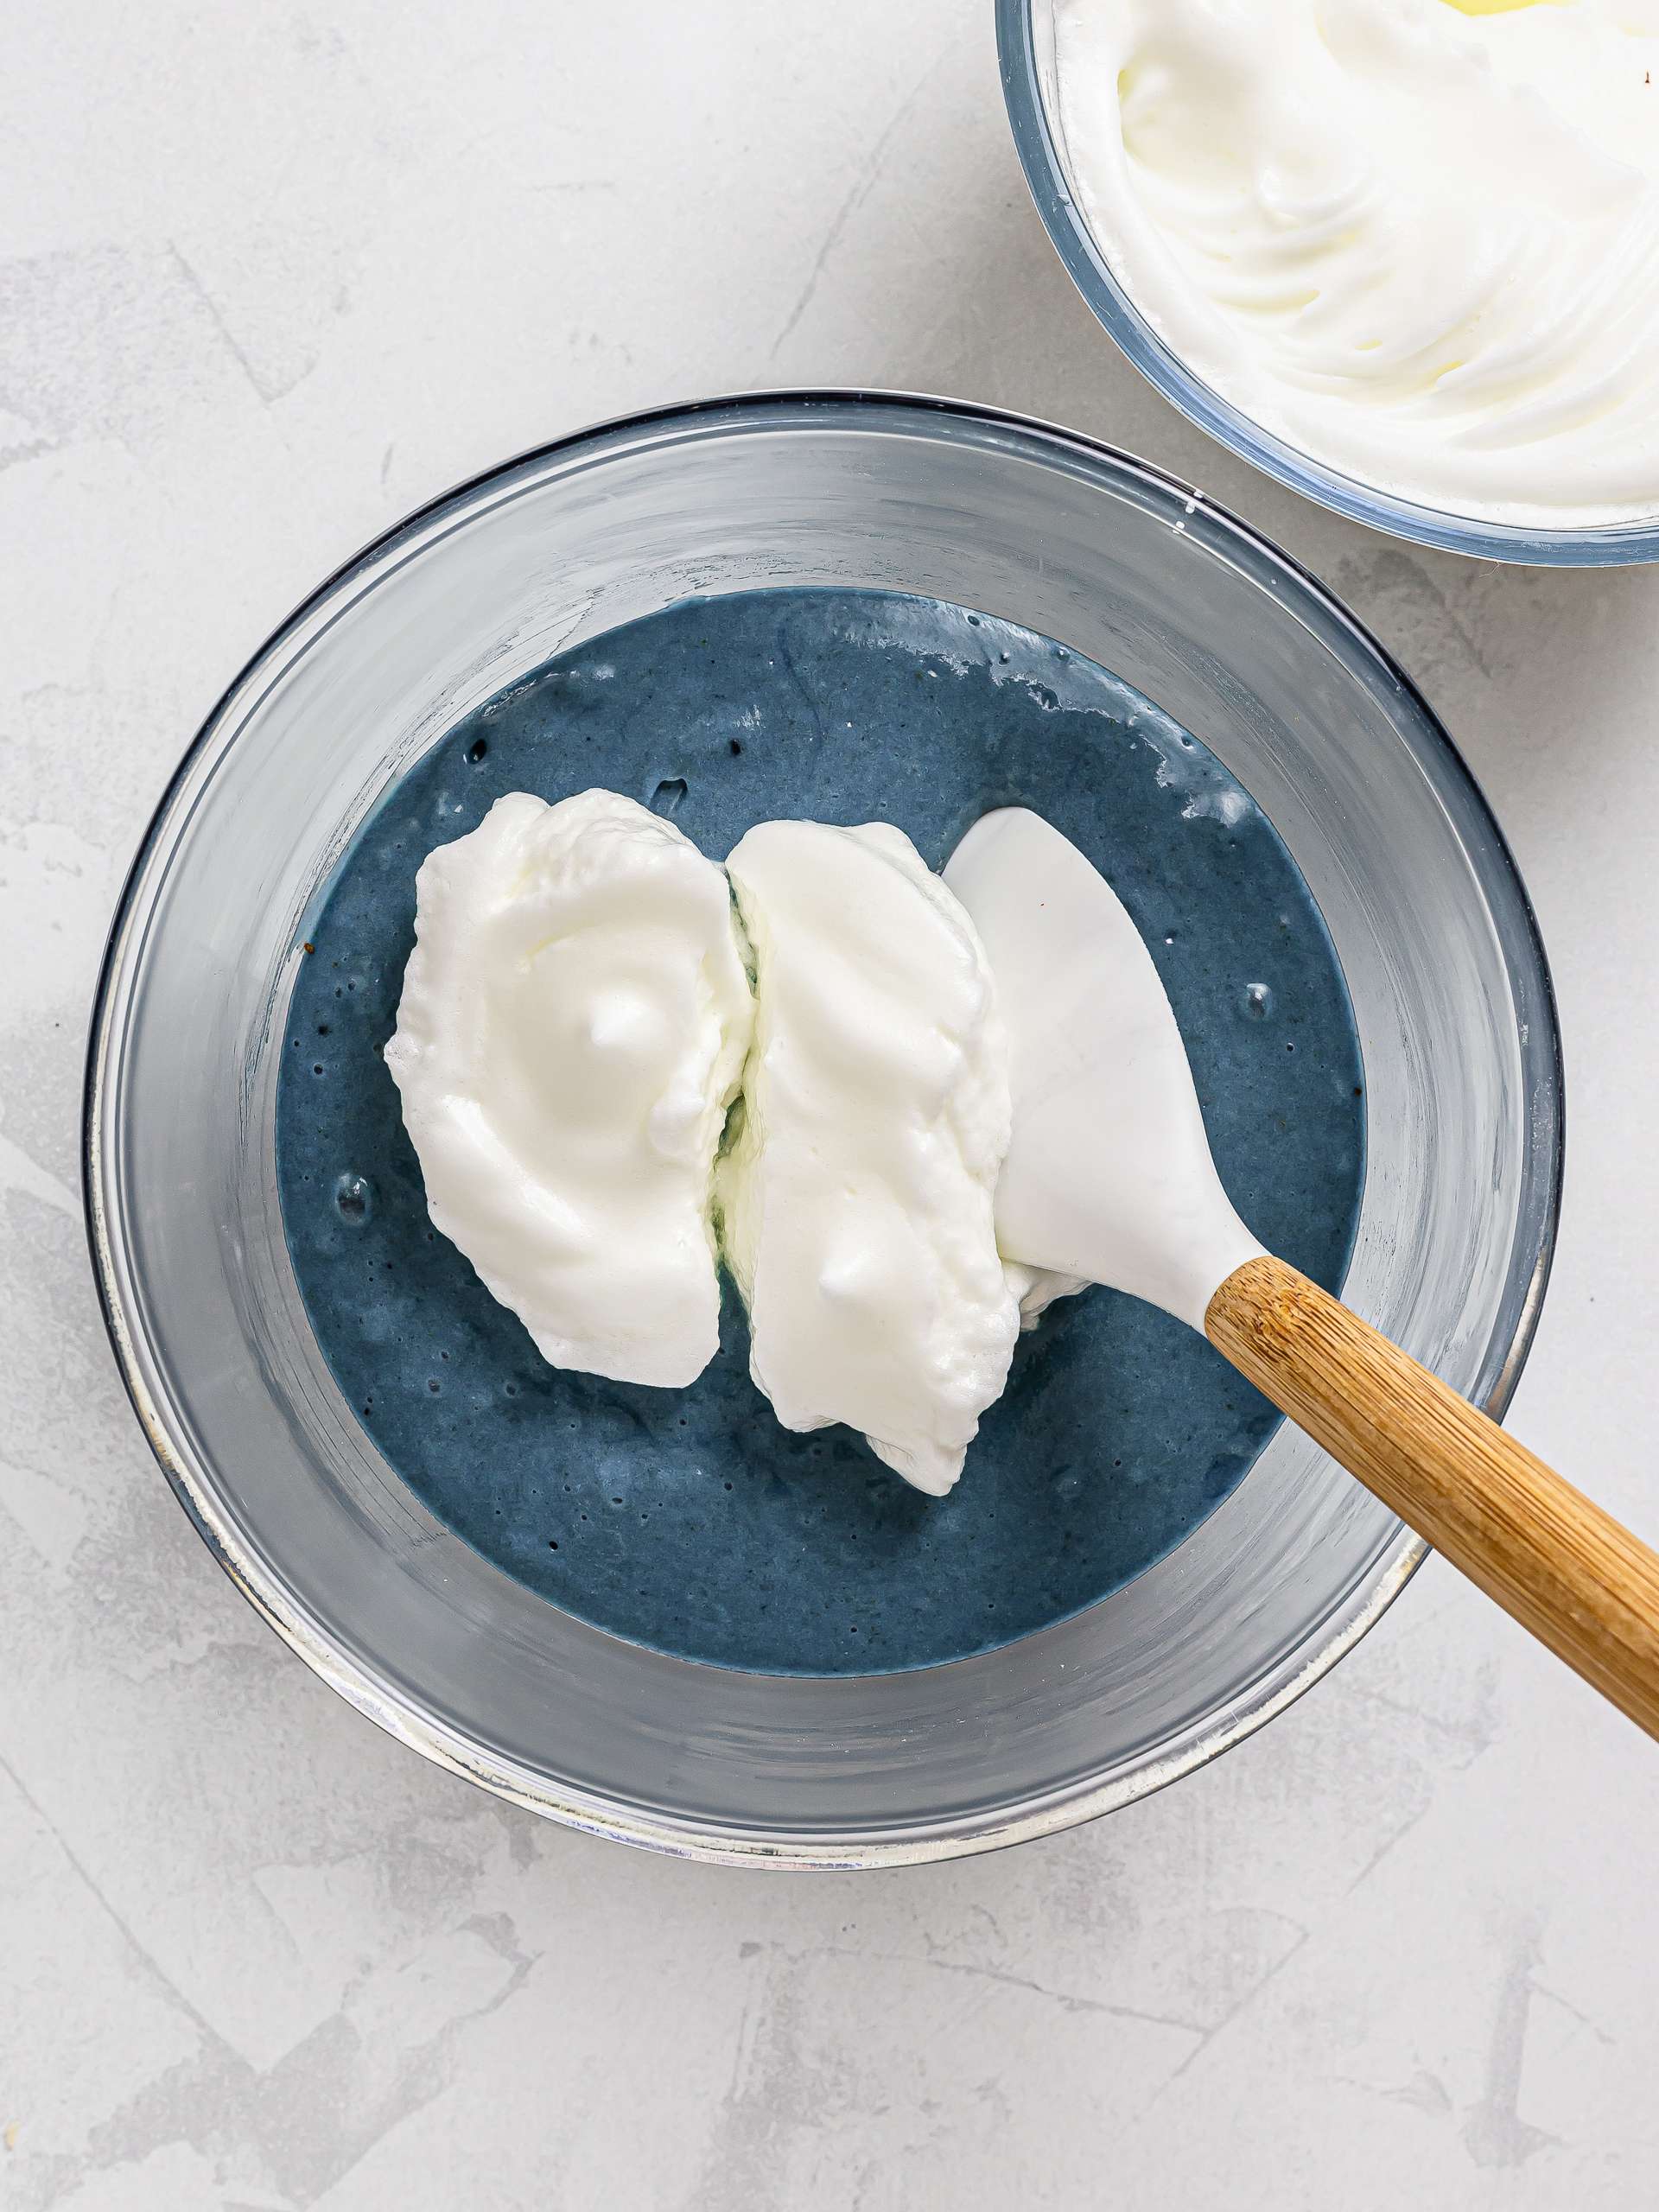 beaten egg whites folded into blue cake batter